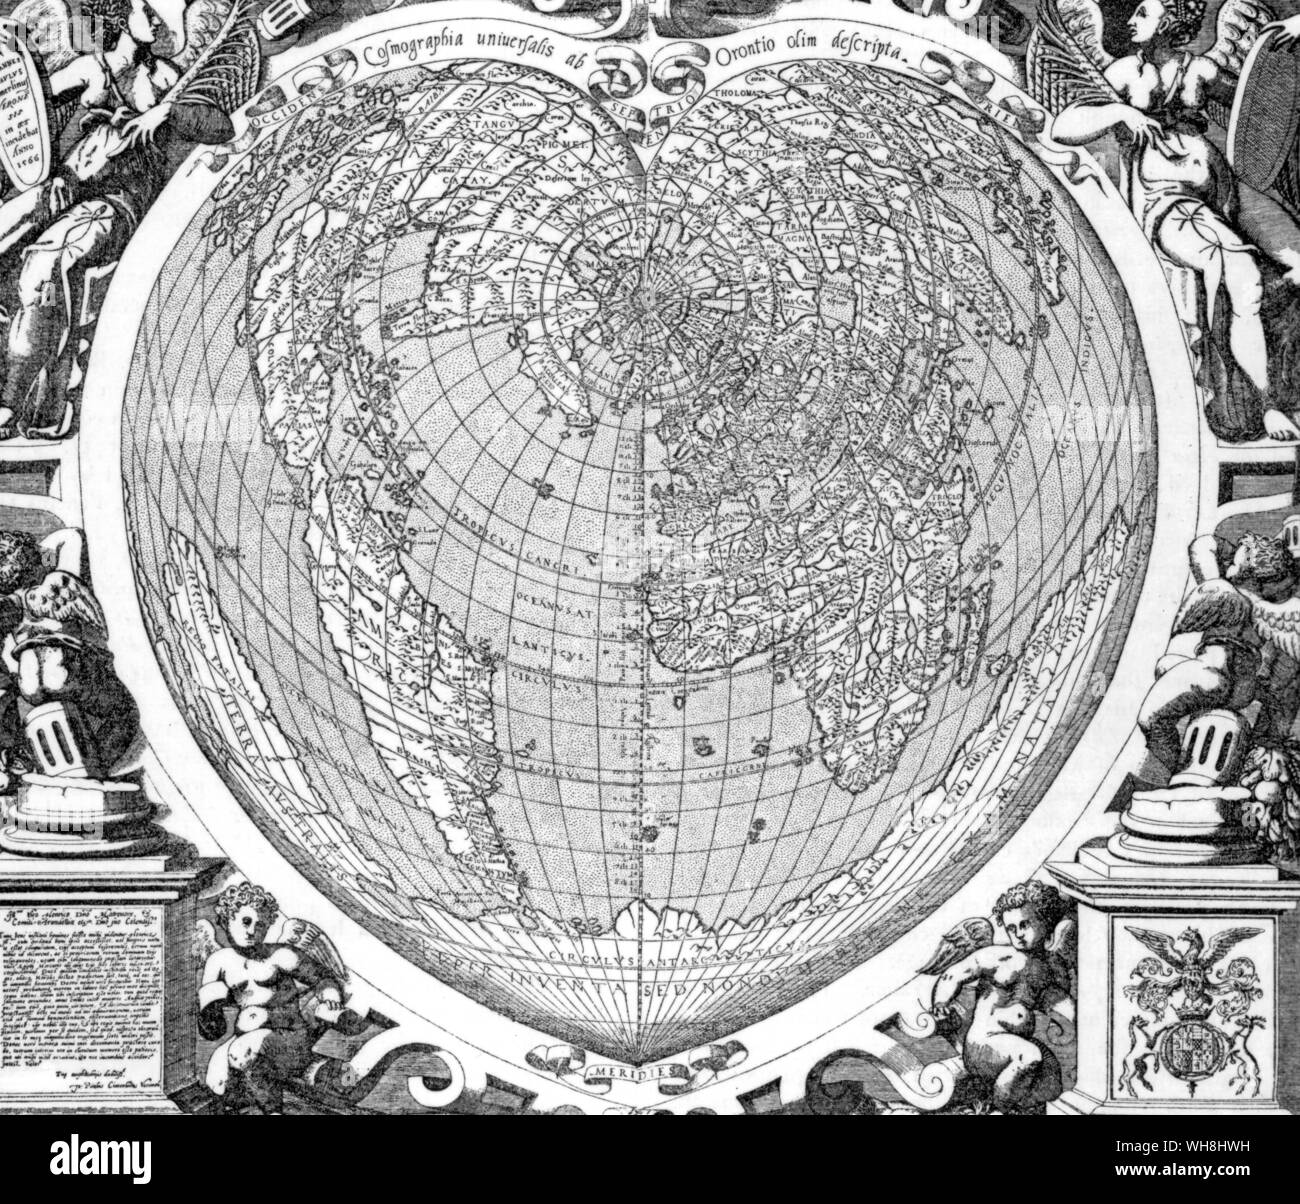 Mappa del mondo da Orontius Finaeus, 1566. Oronce Finé (in latino, Orontius Finnaeus o Finaeus) (1494-1555), matematico francese e cartografo. Nato a Briançon, figlio e nipote di medici, è stato istruito a Parigi (Collège de Navarra), e ha ottenuto una laurea in medicina nel 1522. Ha inventato un cuore a forma di proiezione della mappa, utilizzato frequentemente da altri cartografi, come Peter Apian e Gerardus Mercator. Finaeus ha tentato di conciliare le scoperte nel nuovo mondo con le vecchie leggende medievali e informazioni (derivata da Tolomeo) per quanto riguarda l'Orient. Antartide: l'ultimo Foto Stock